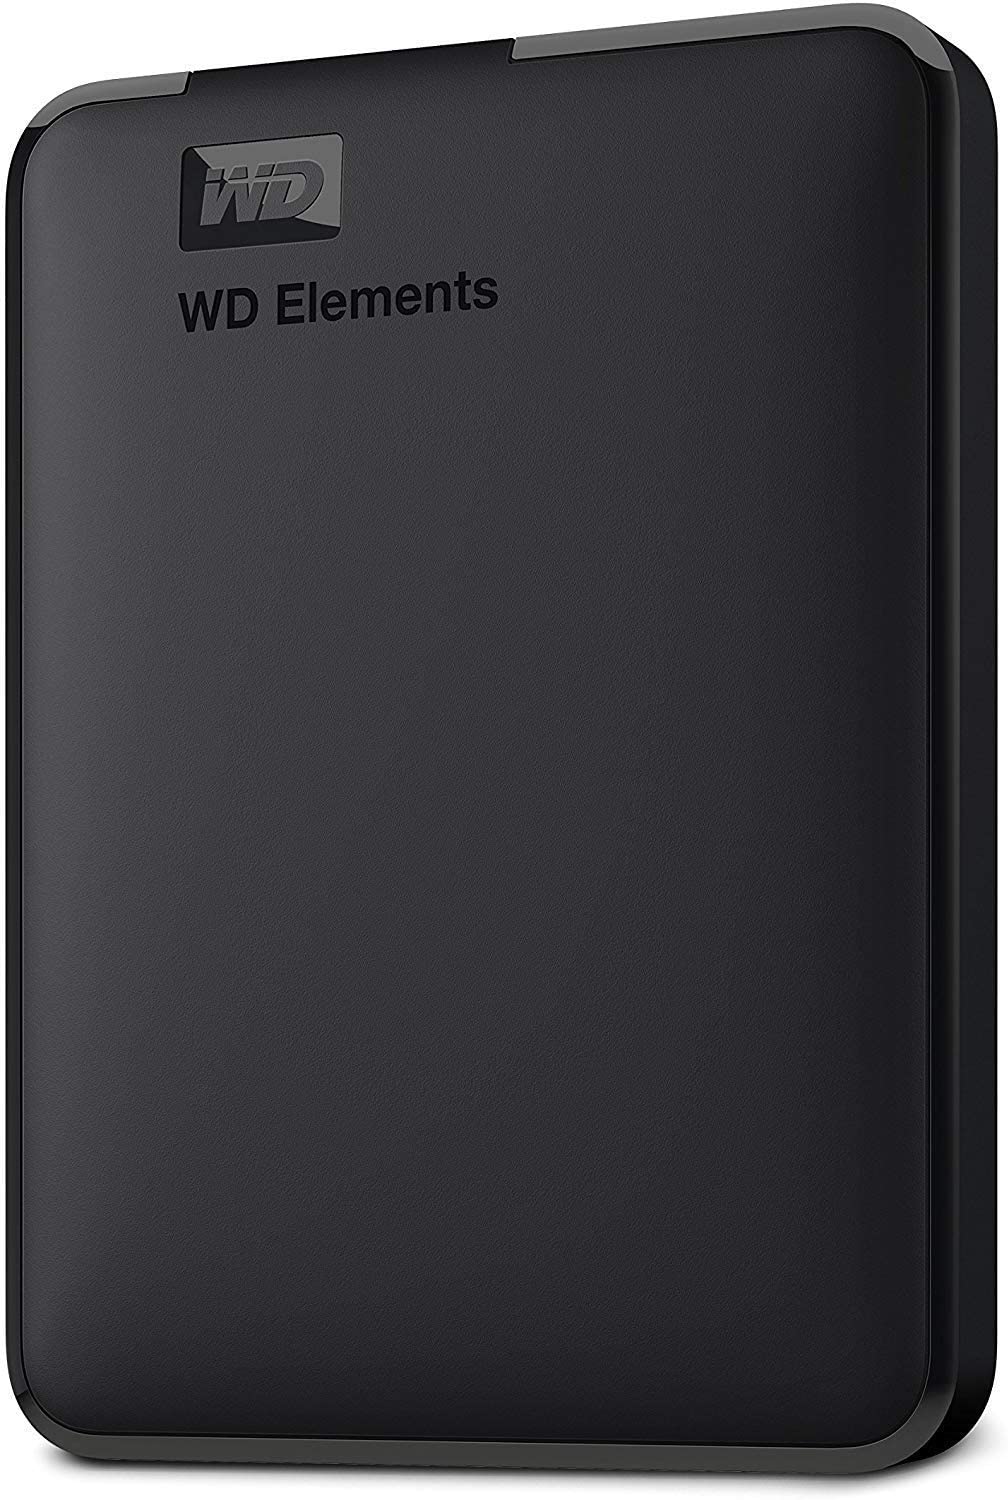 WD Elements Hard Disk Esterno, Portatile, USB 3.0, 1 TB, Nero